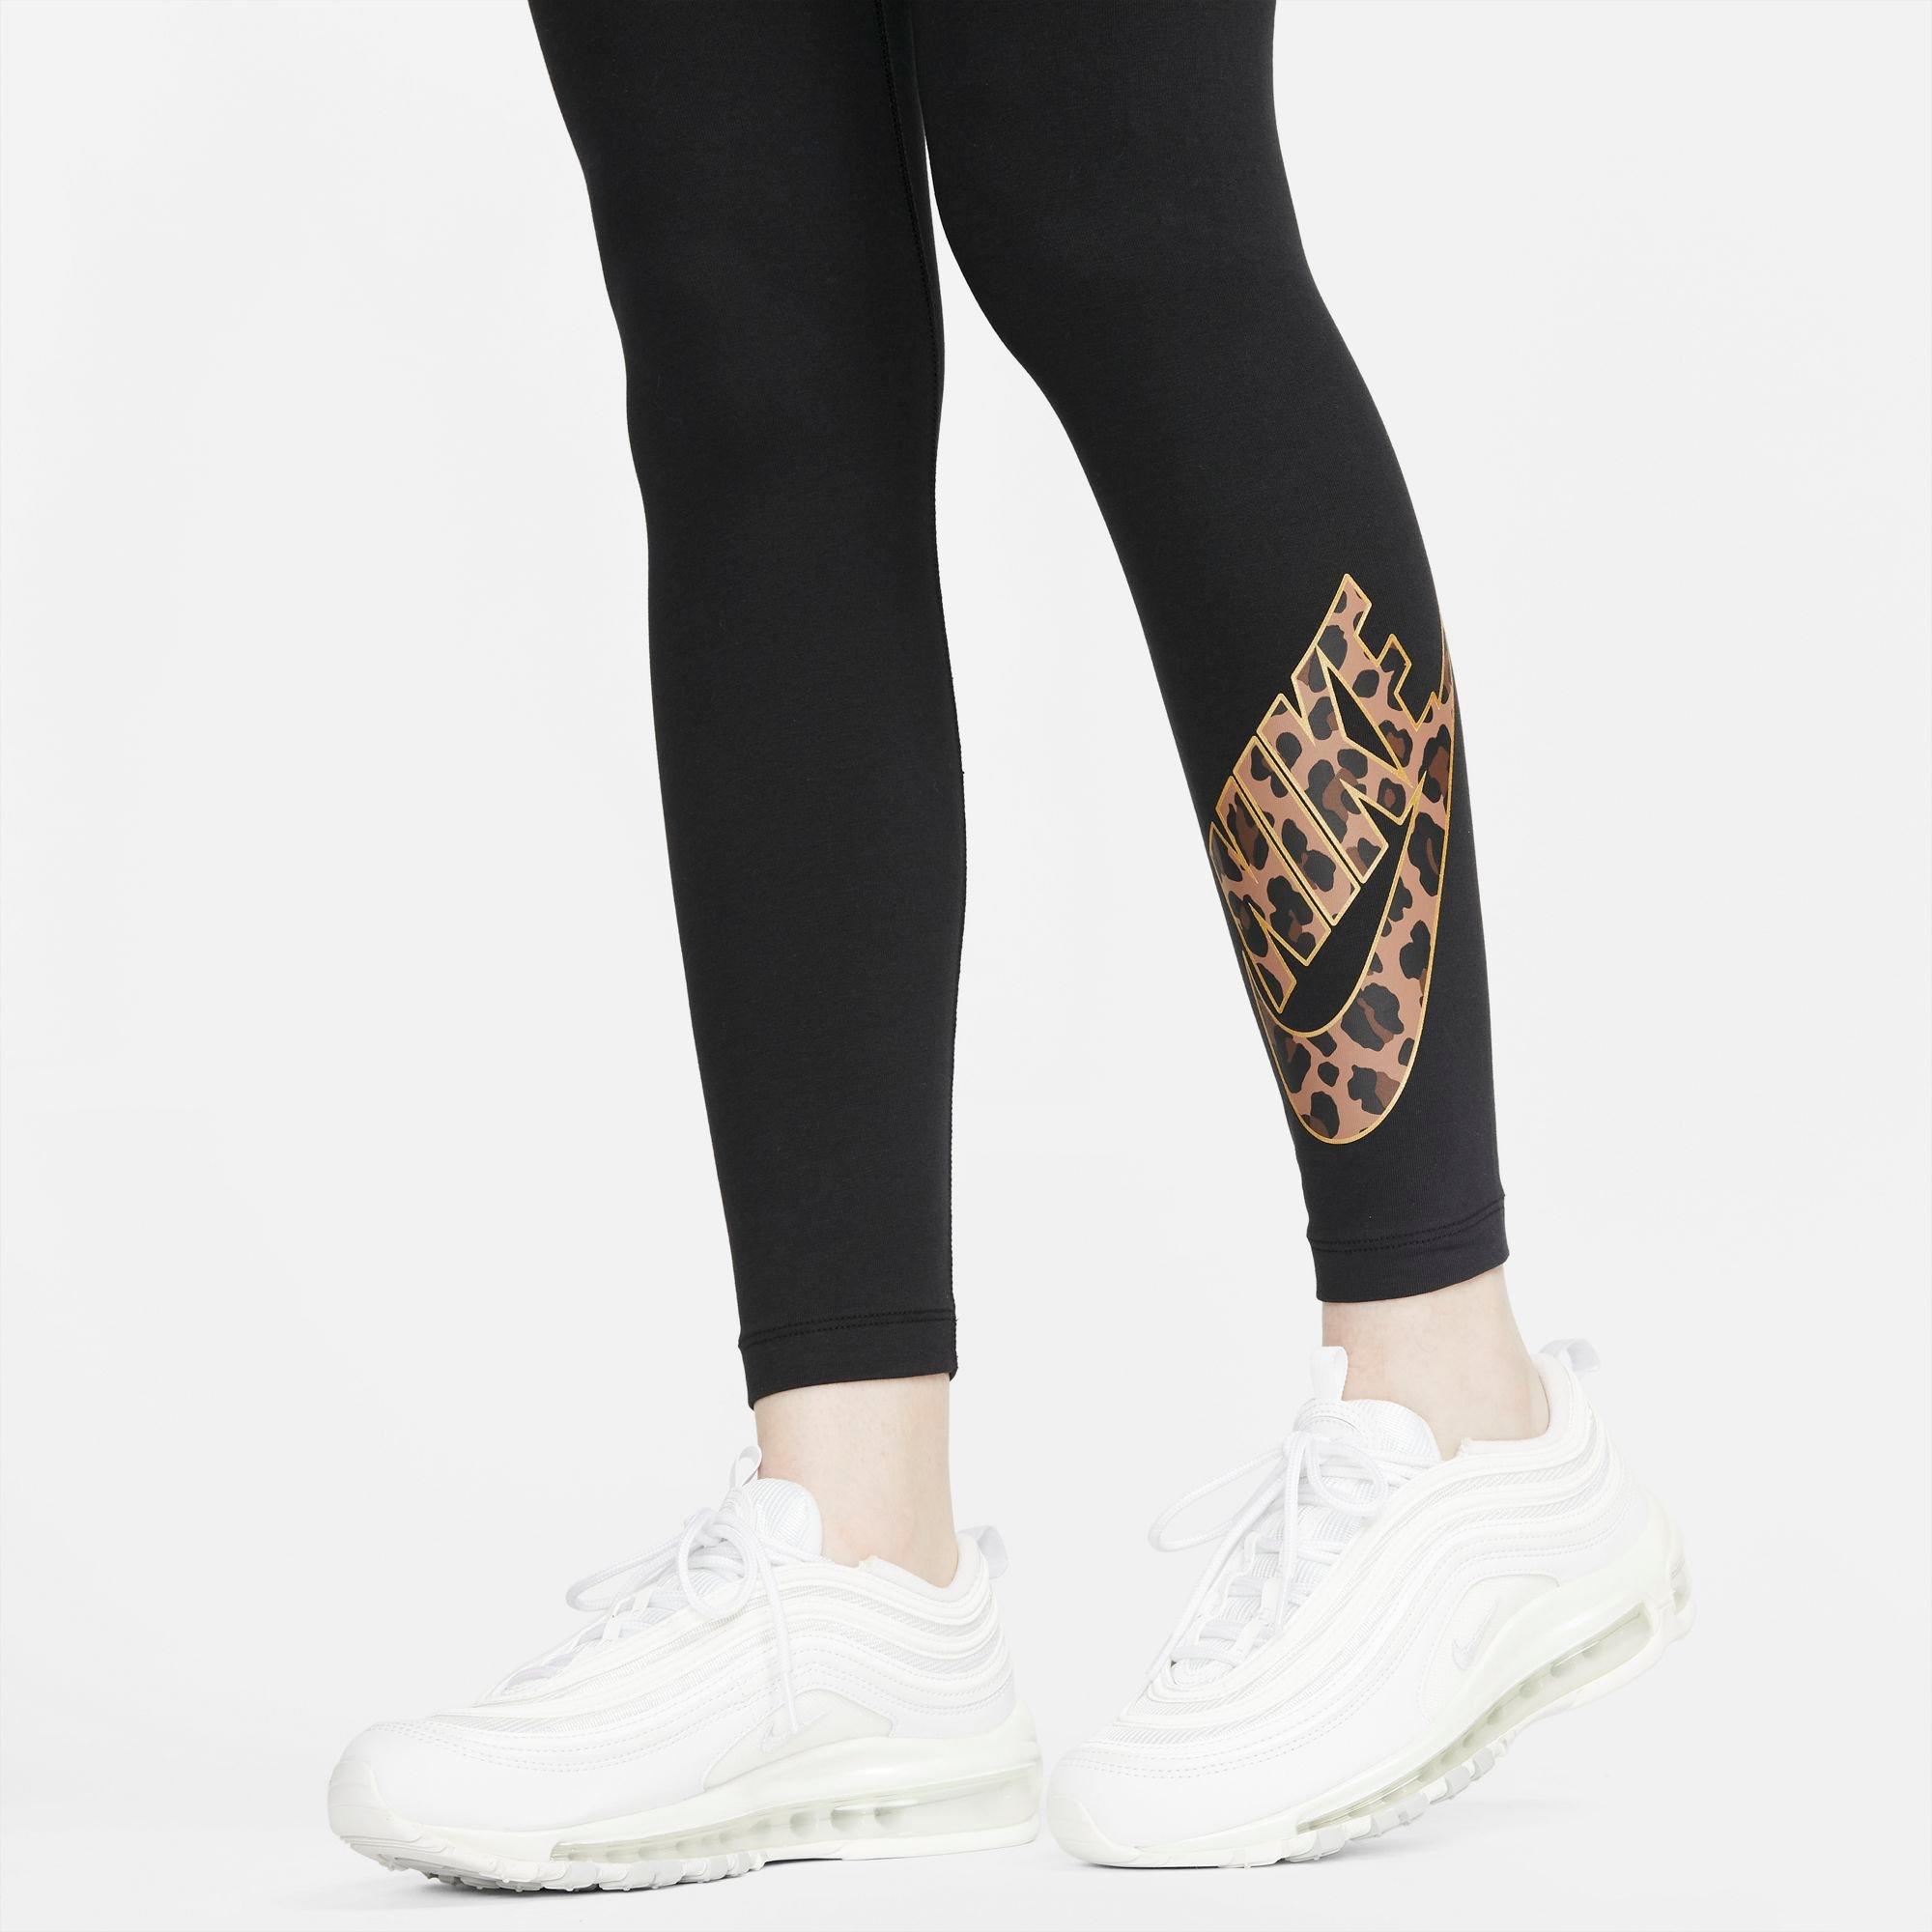 Nike Womens Animal Print Swoosh Leggings - Black